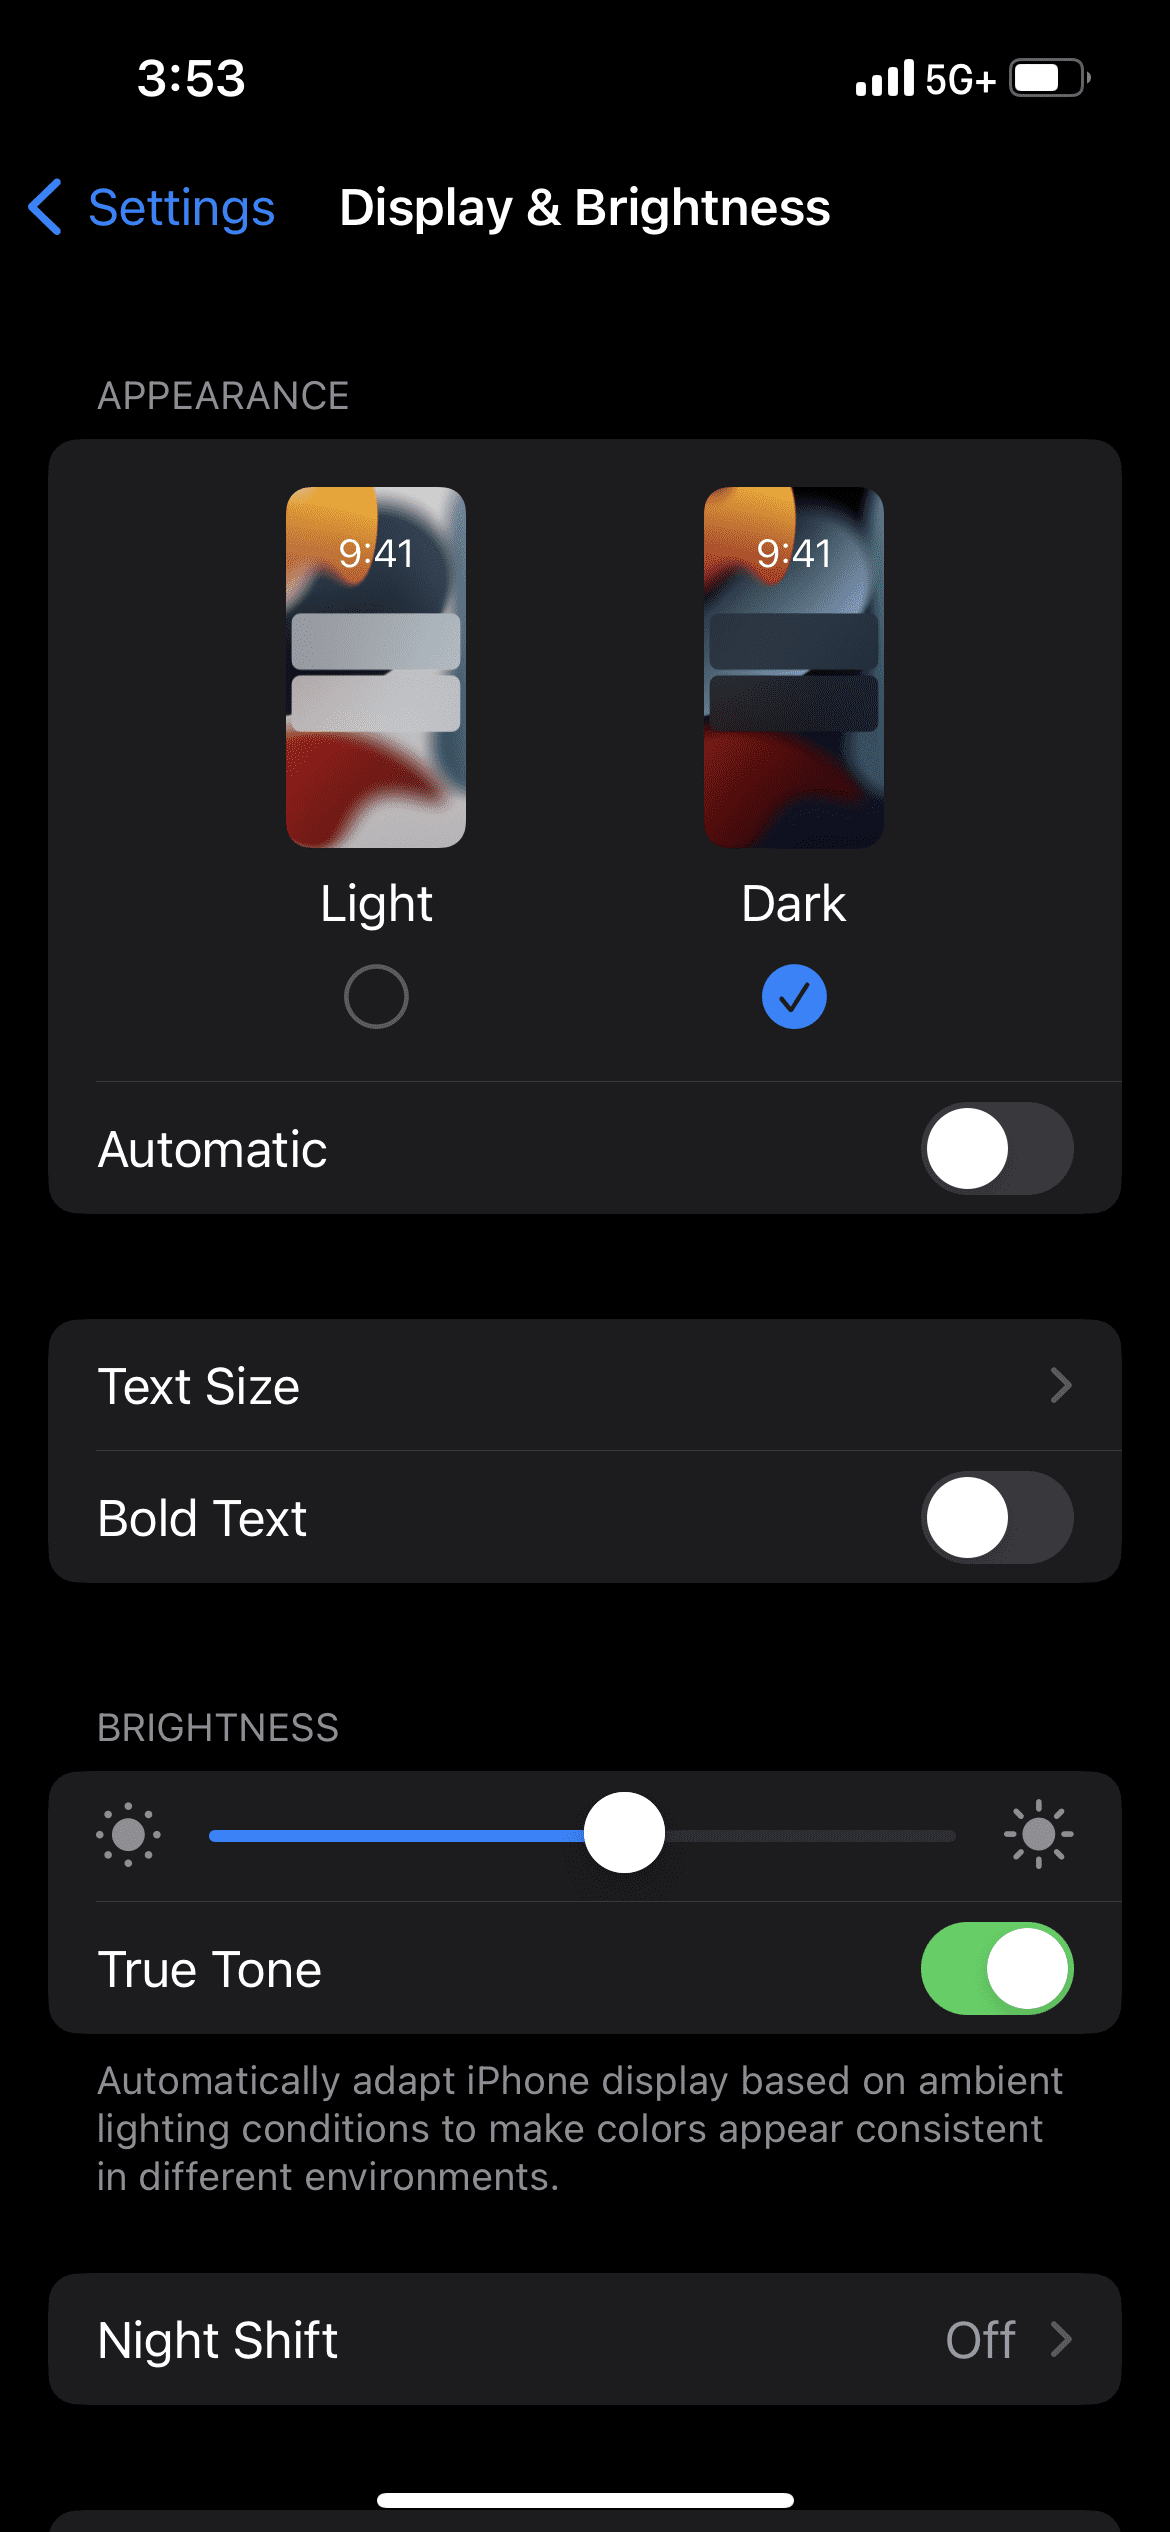 Gen Z uses dark mode instead of light mode. 